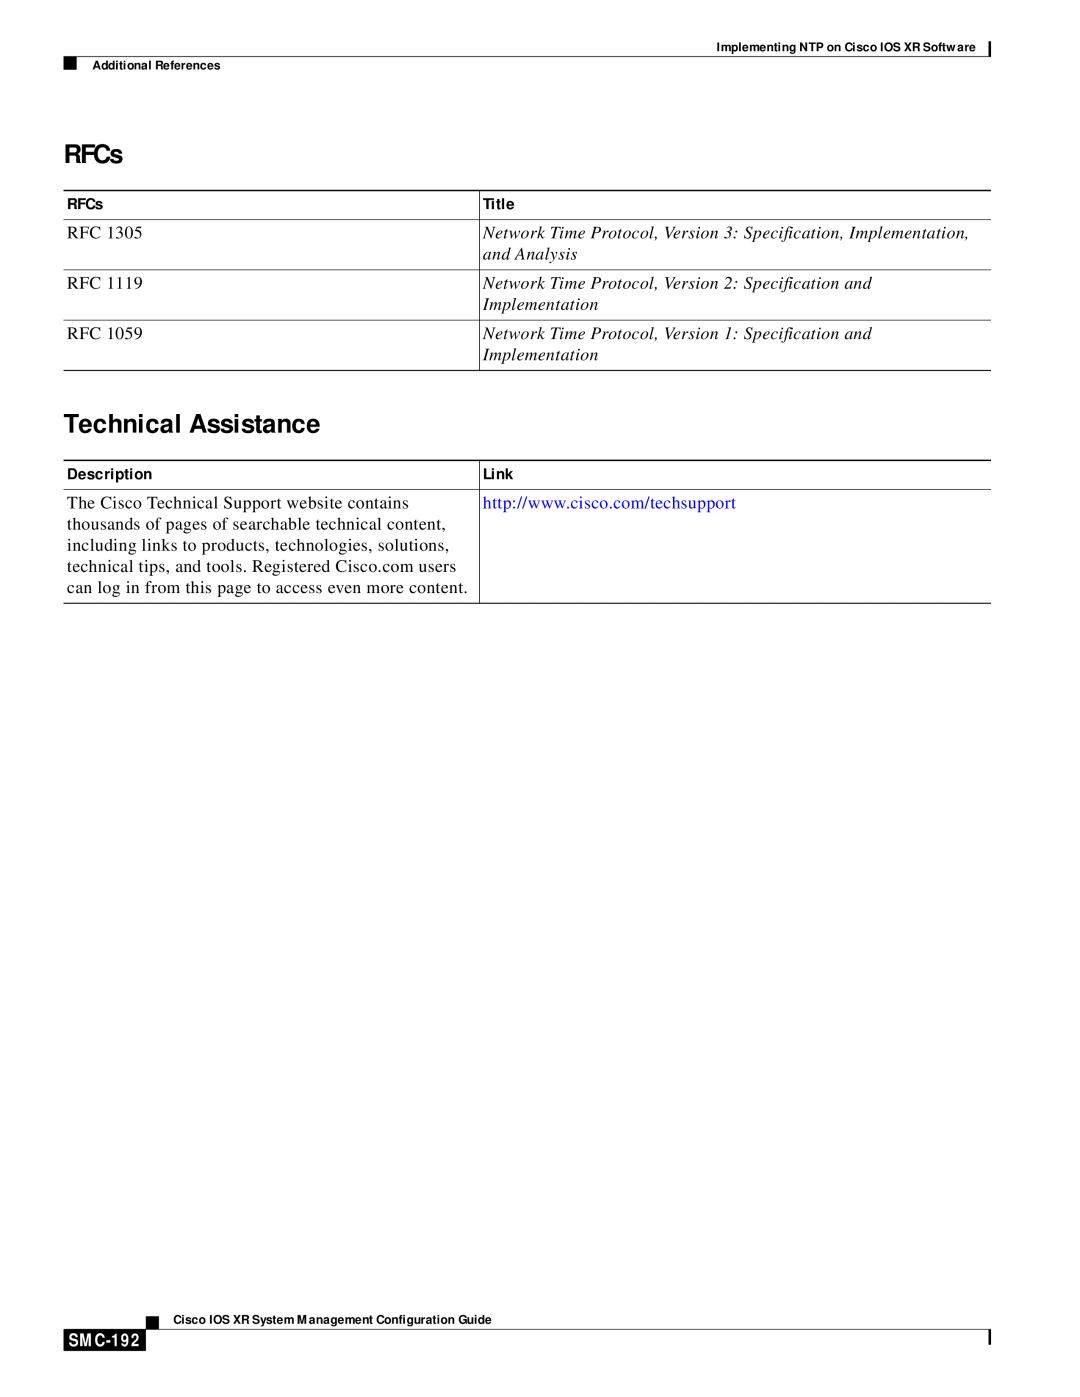 Cisco Systems SMC-169 manual RFCs, Technical Assistance, Description, Link, SMC-192, Title 